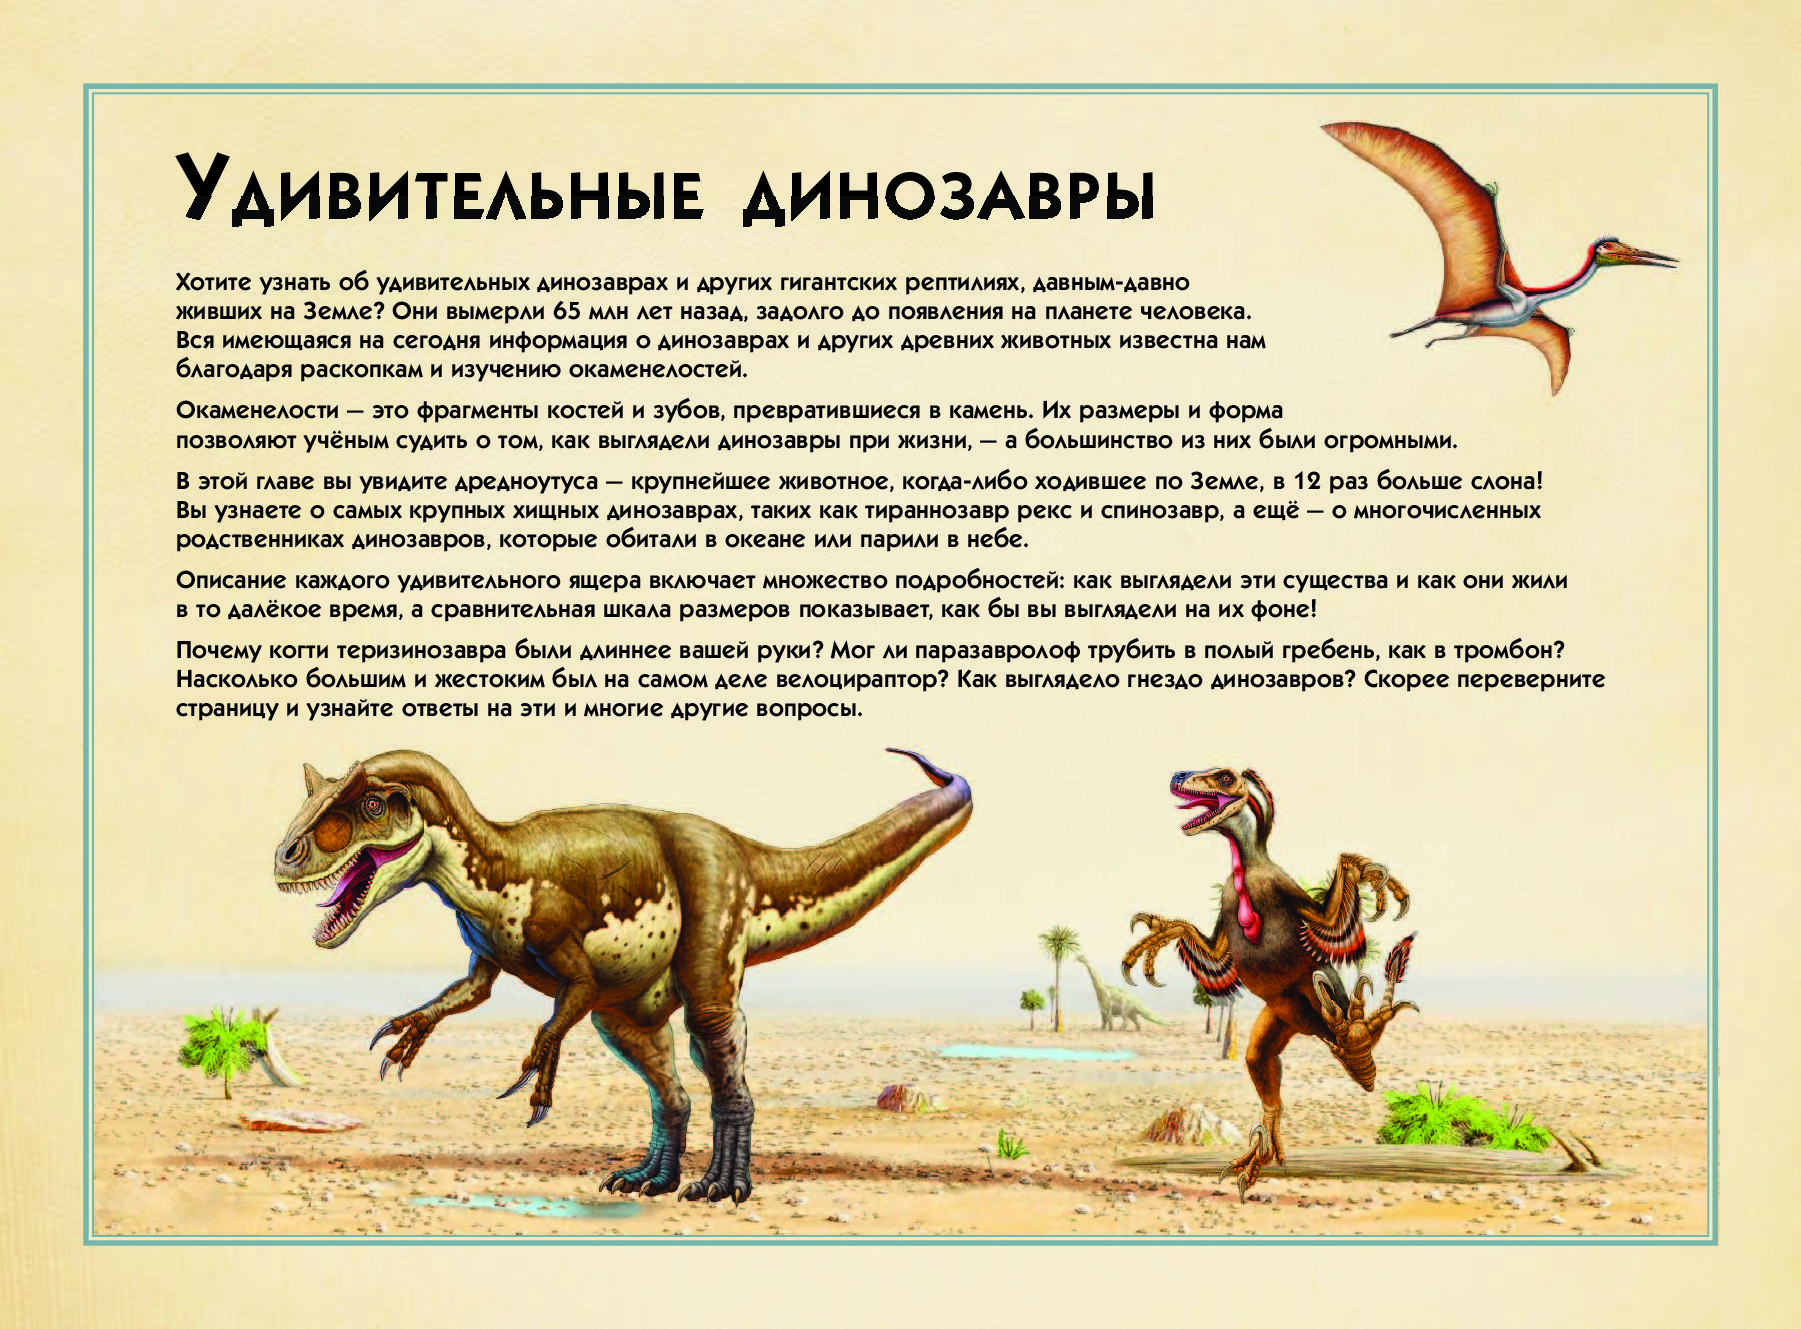 Опиши динозавра. Описание динозавров. Динозавры описание для детей. Происхождение динозавров. Сочинение про динозавров.